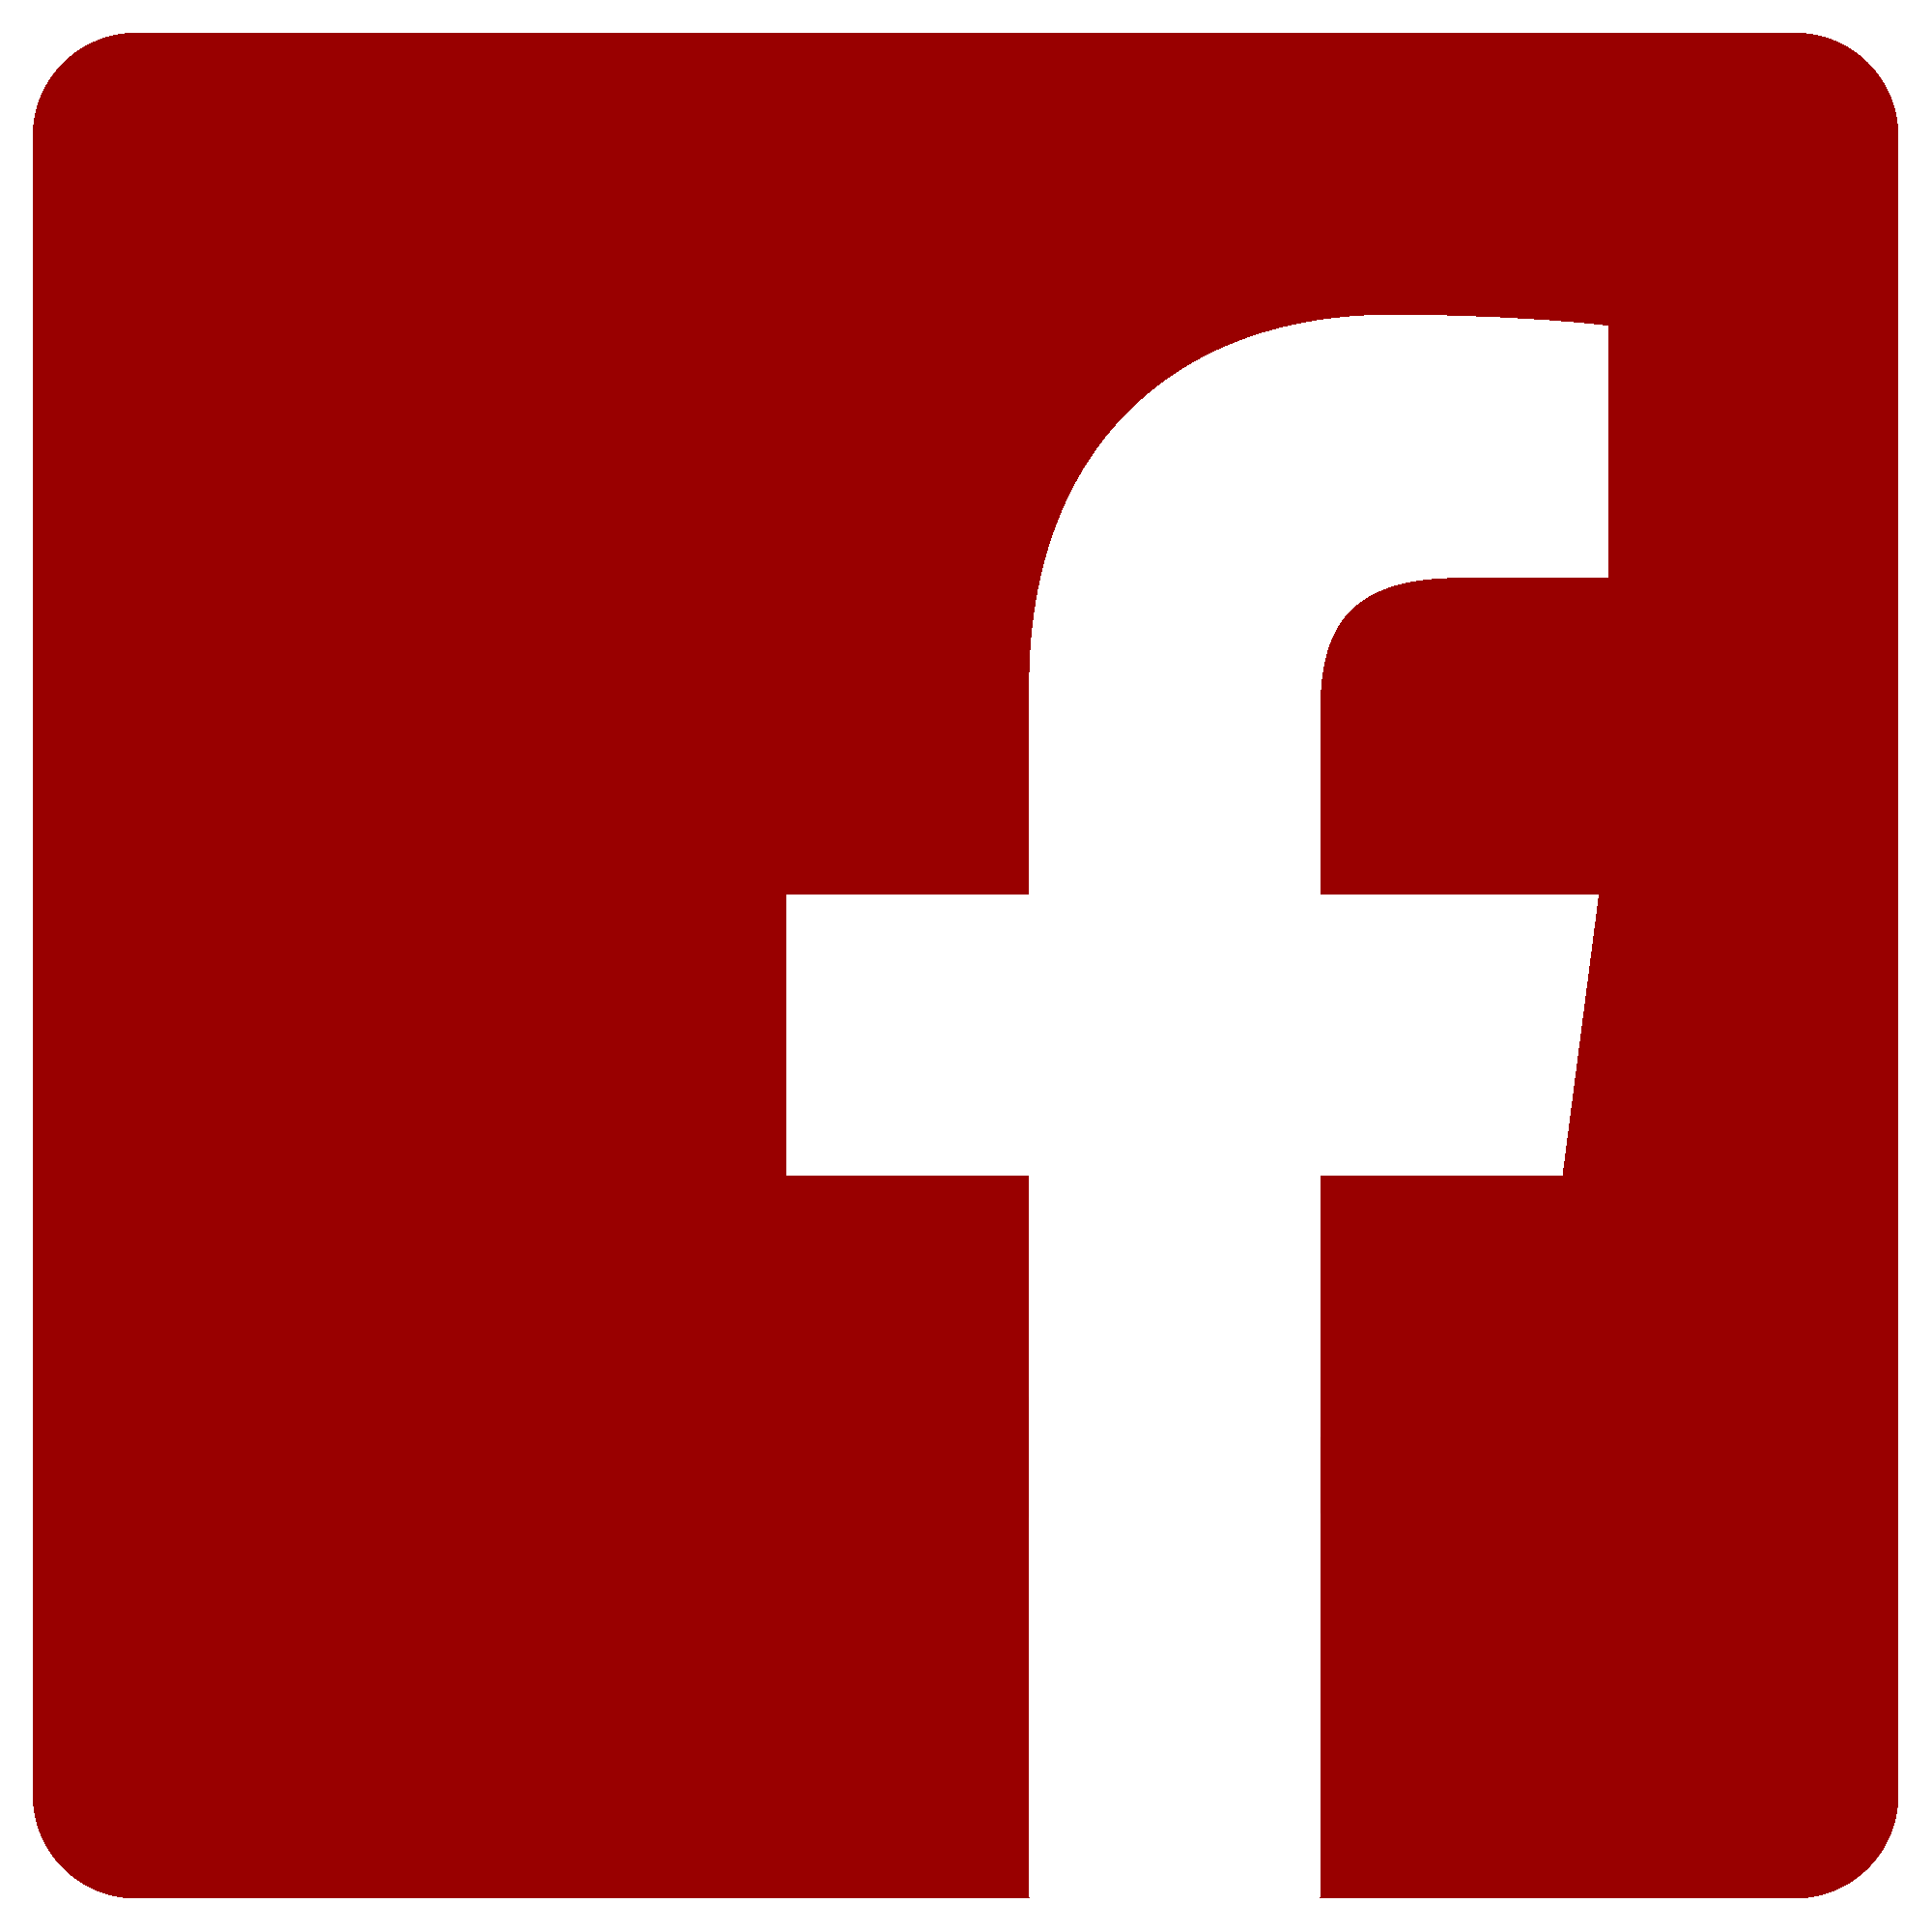 Red Facebook Logo Transparent - IMAGESEE